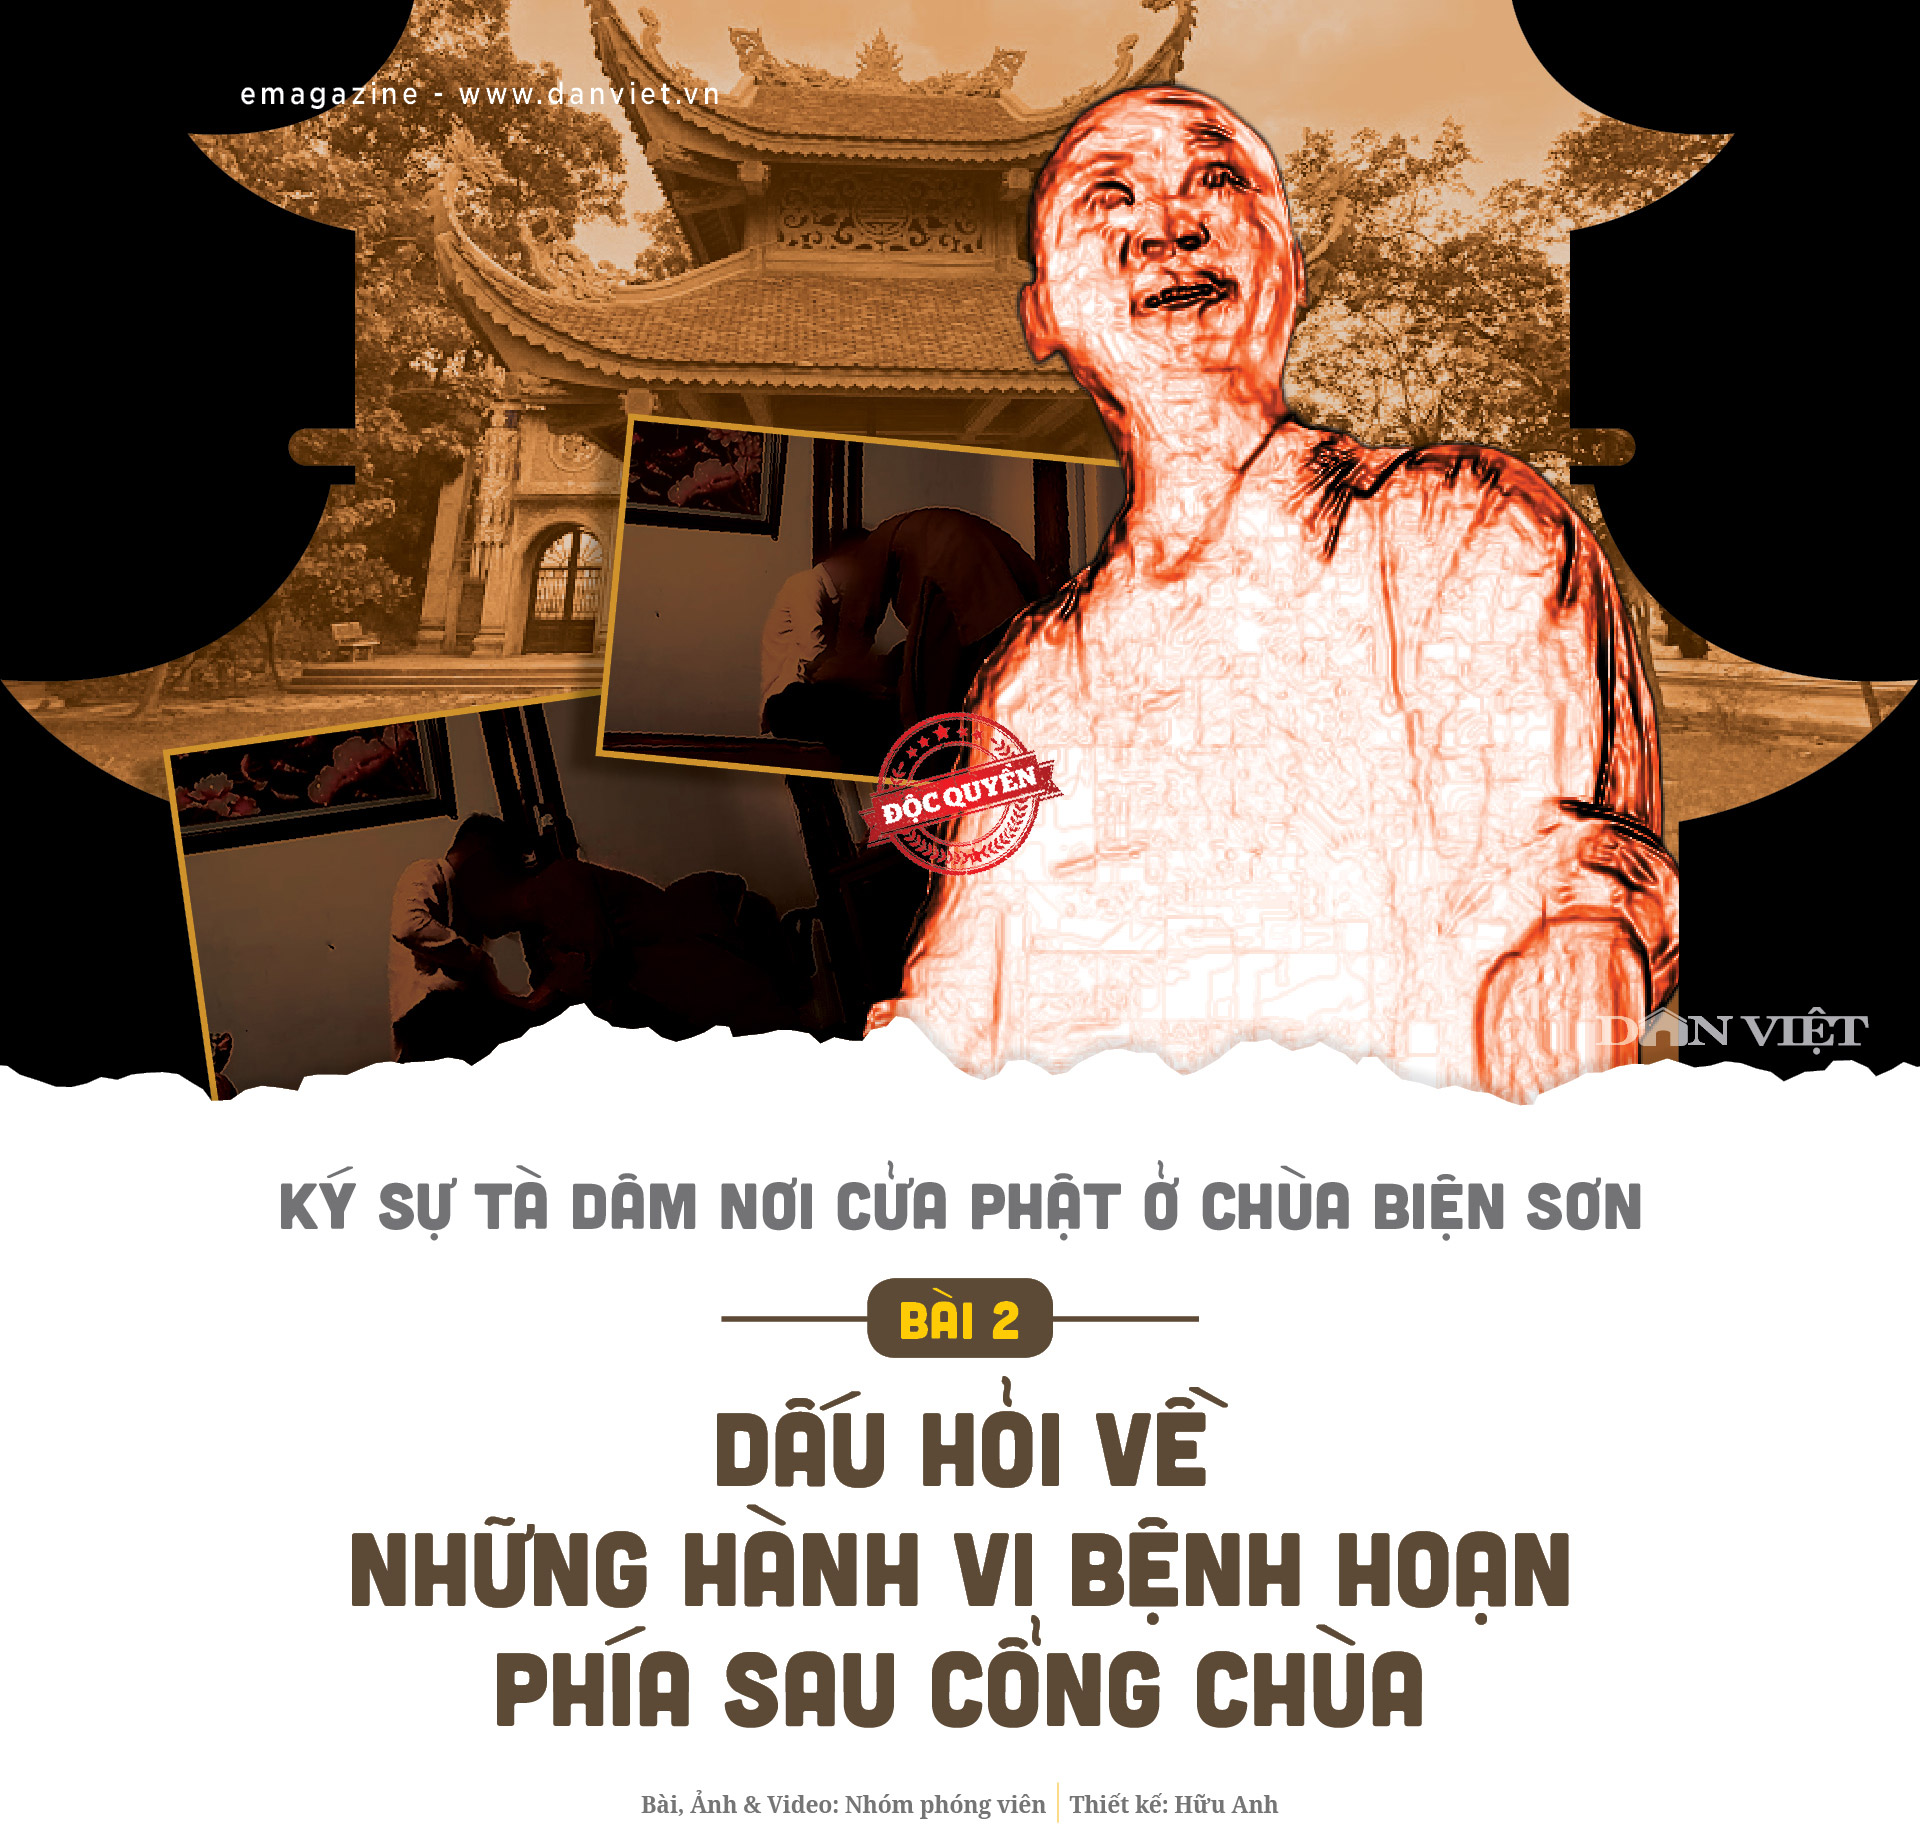 Dấu hỏi về những hành vi bệnh hoạn phía sau cổng chùa Biện Sơn Chua-bien-son-p201-1658071230259755348366